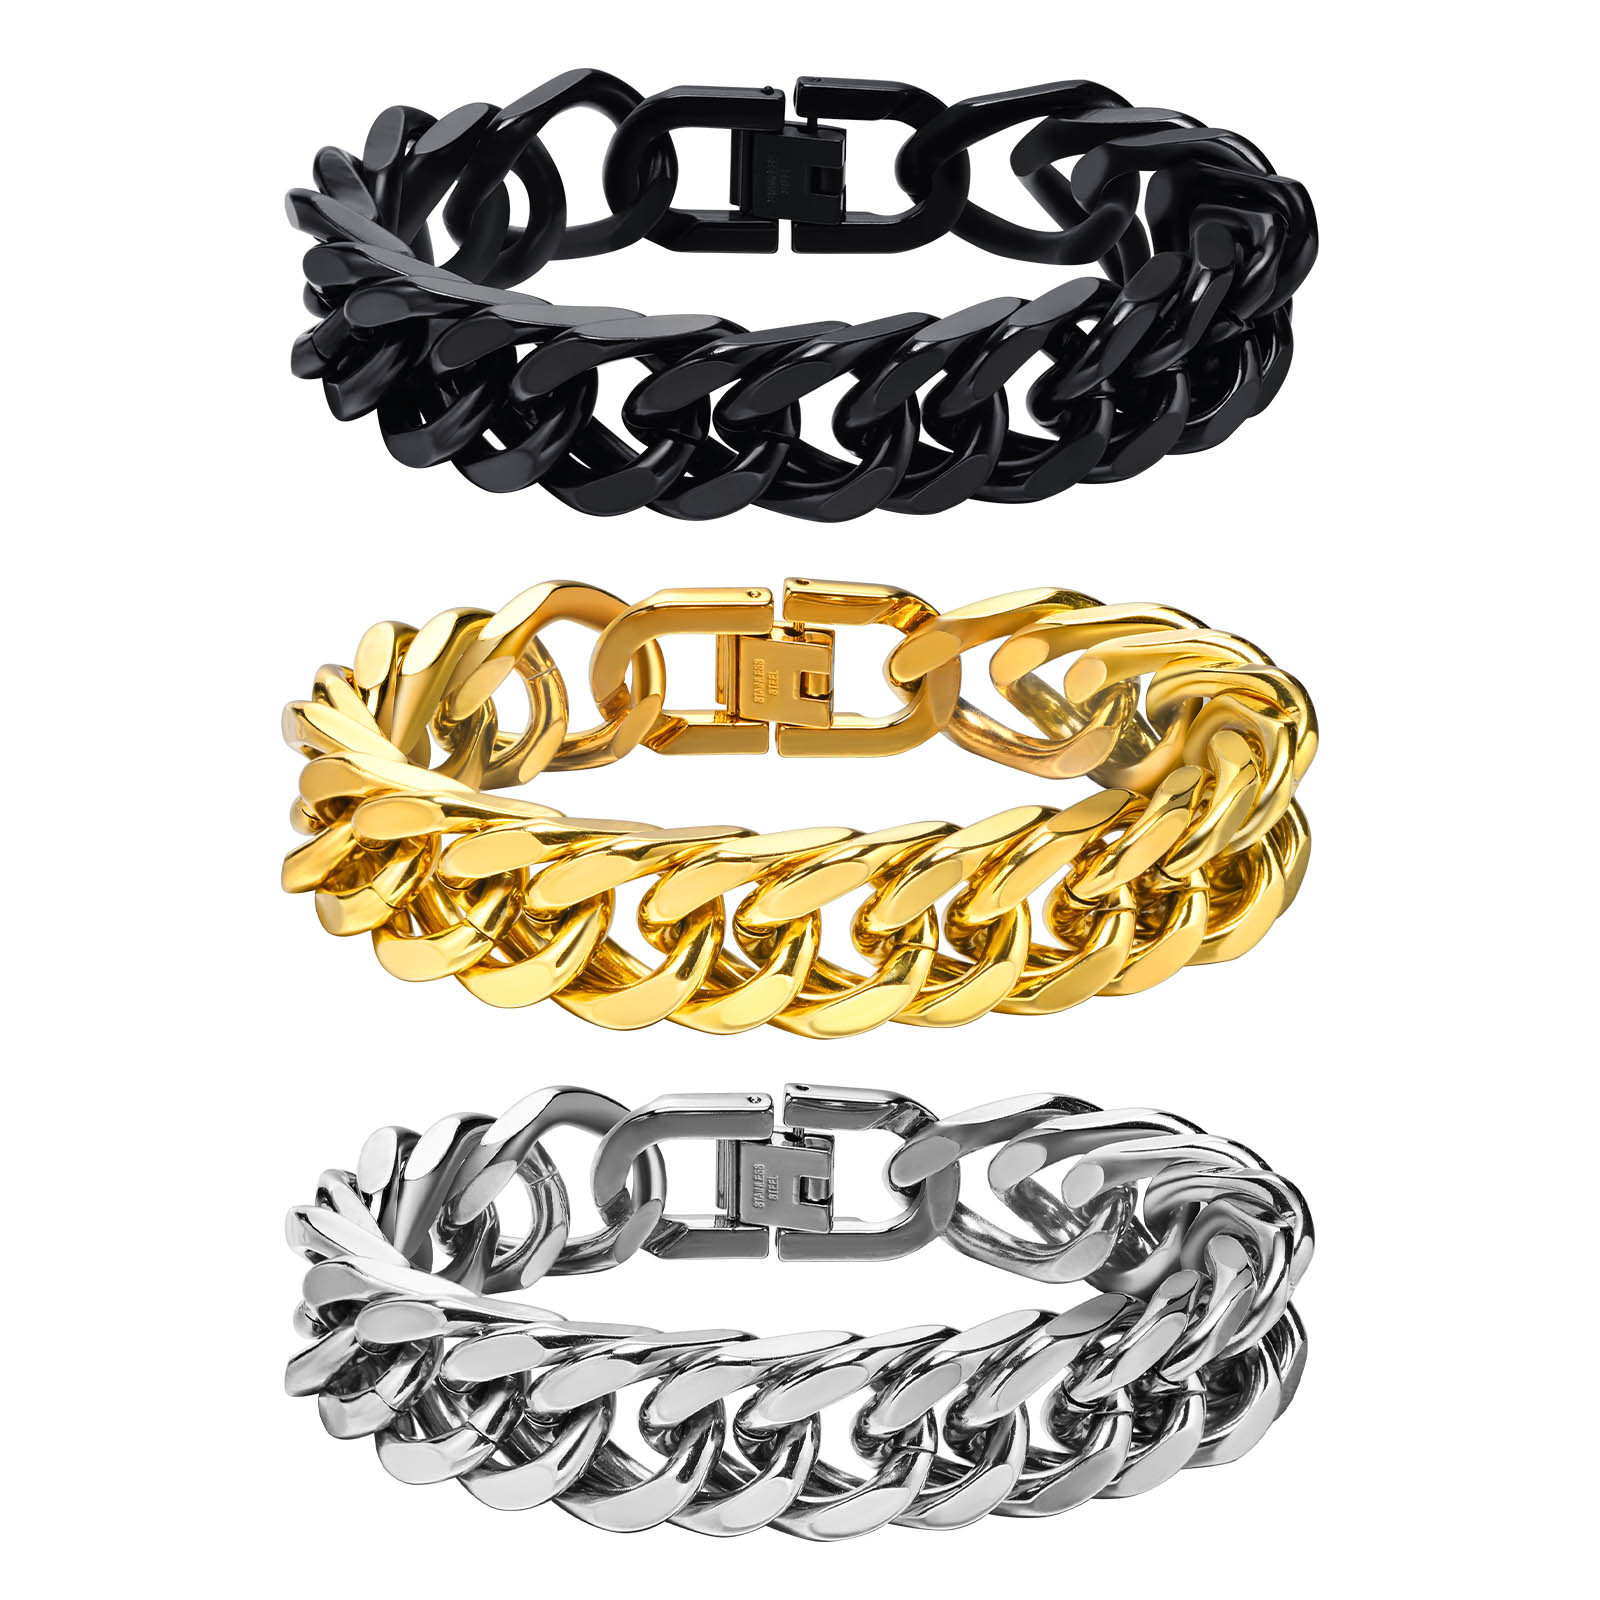 Steel chain width 15MM; bracelet total length 19CM